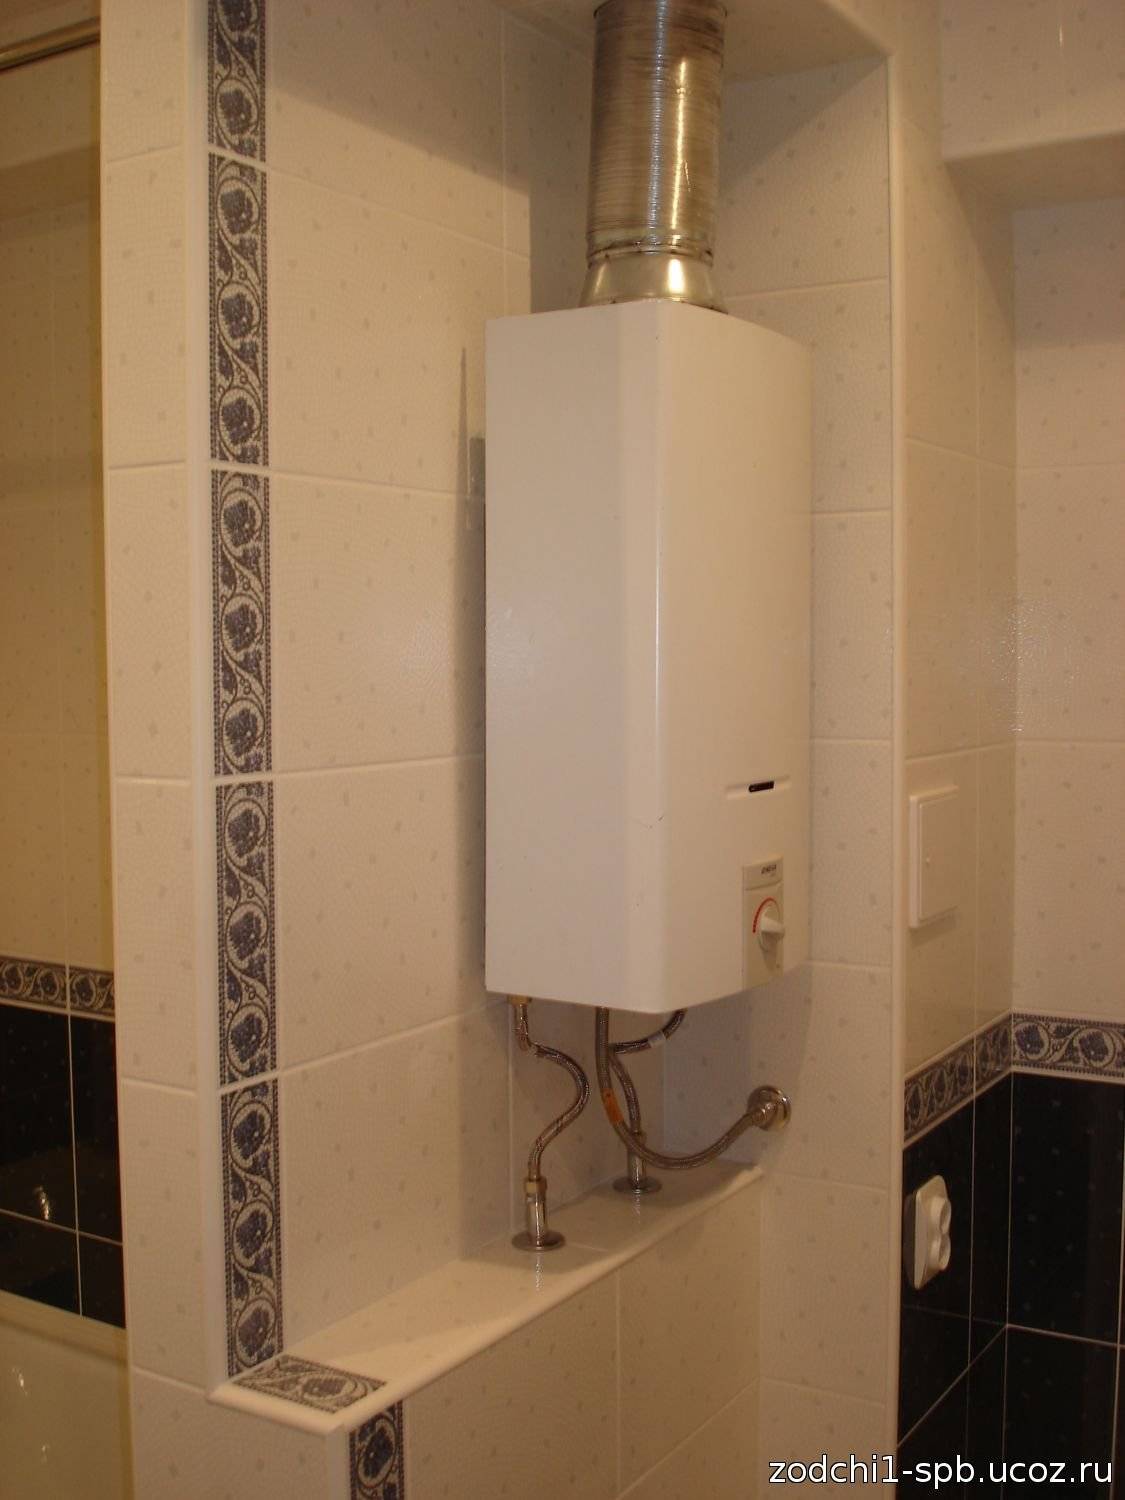 Правила установки газовой колонки в ванной комнате